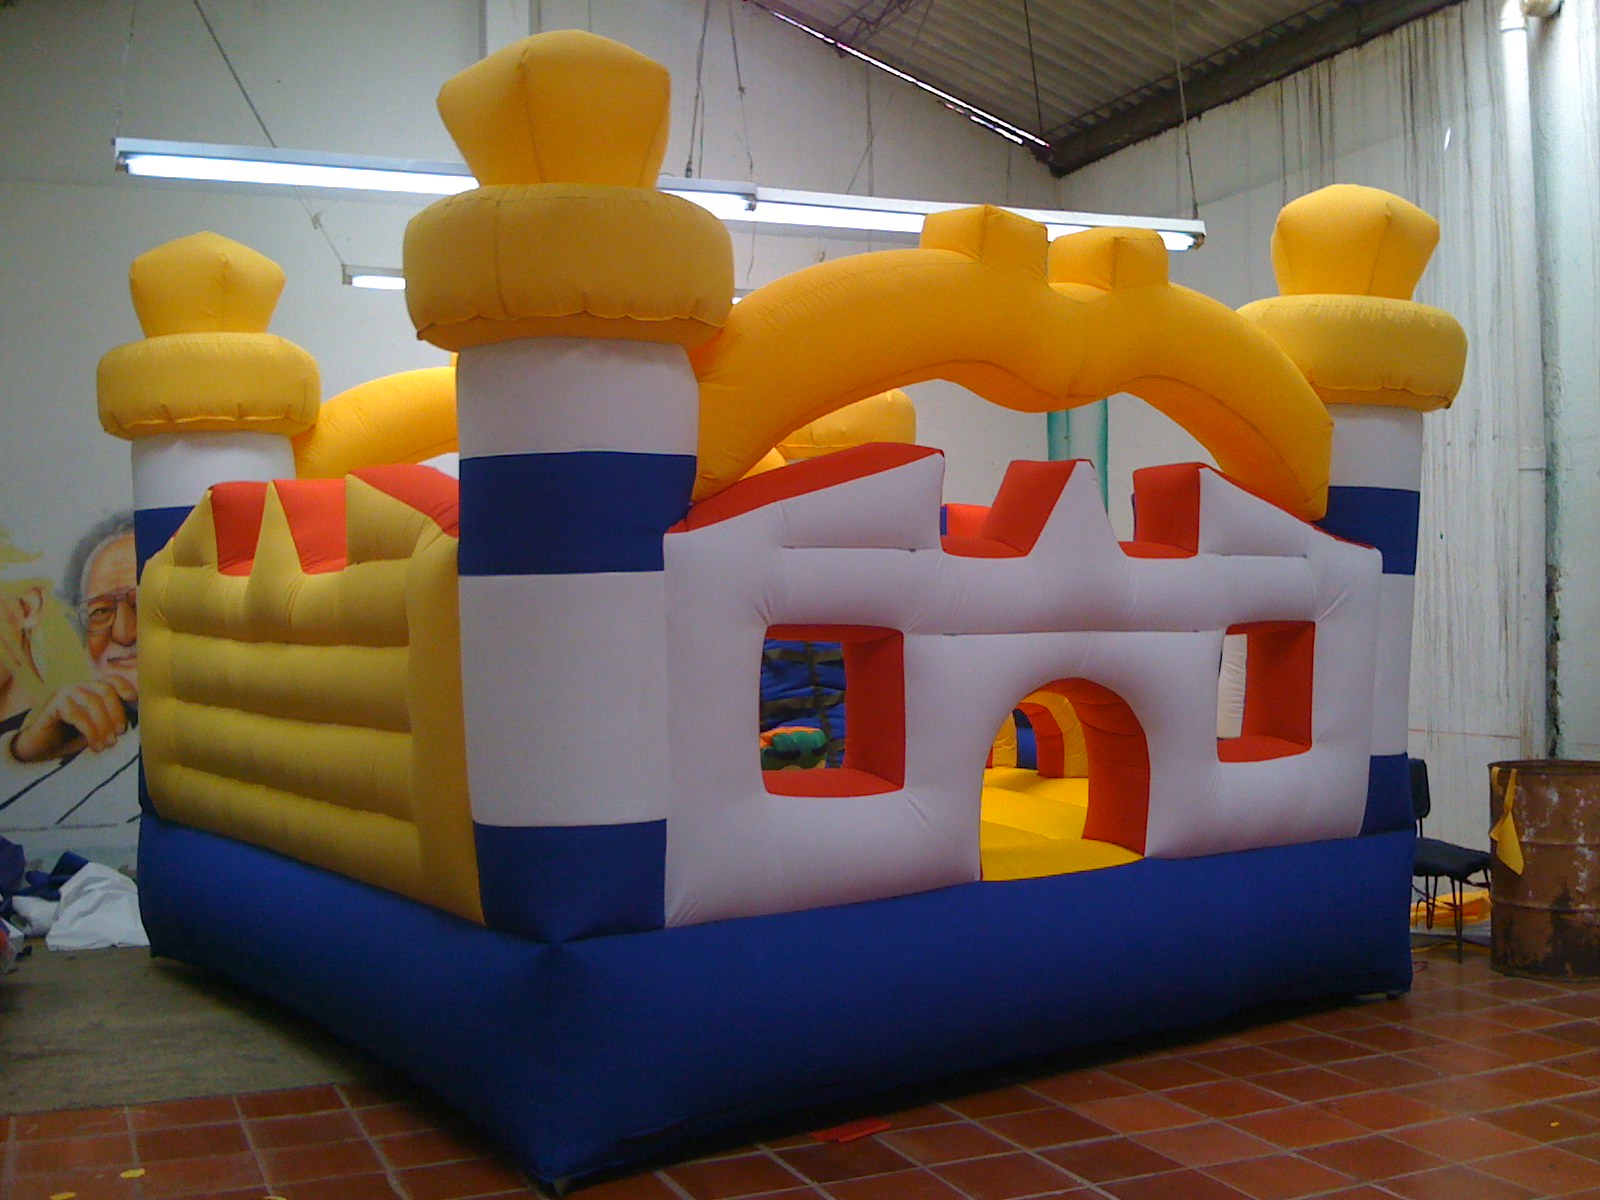 saltarines, brincolines, brinca brinca, inflables, trampolines, castillos inflafles, dummies inflabl